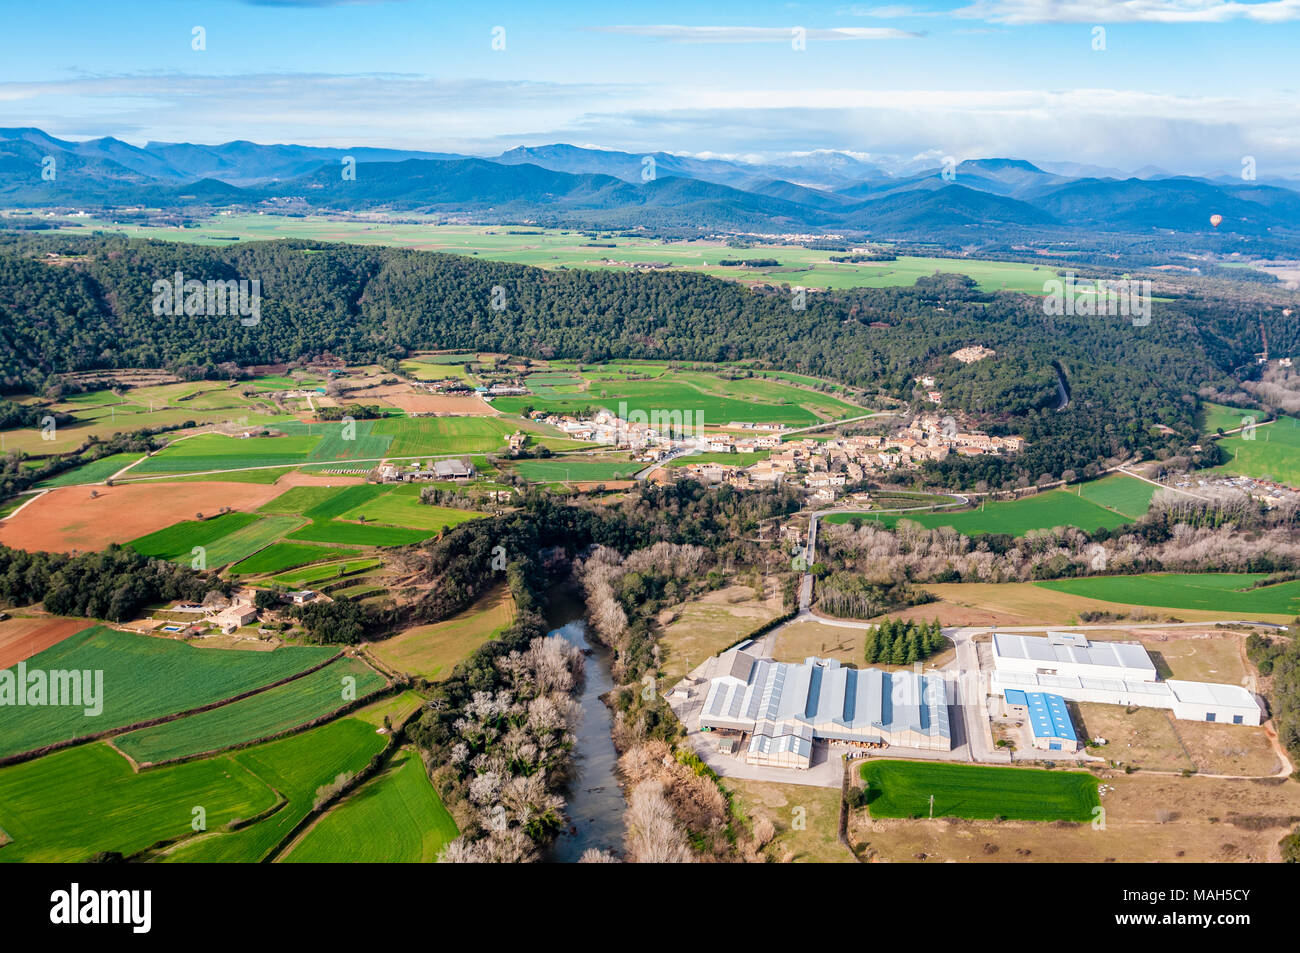 Vista aerea di campi di raccolto e parco industriale con tubicini di foresta, alcune noci sulla destra, Garrotxa, Catalogna, Spagna Foto Stock